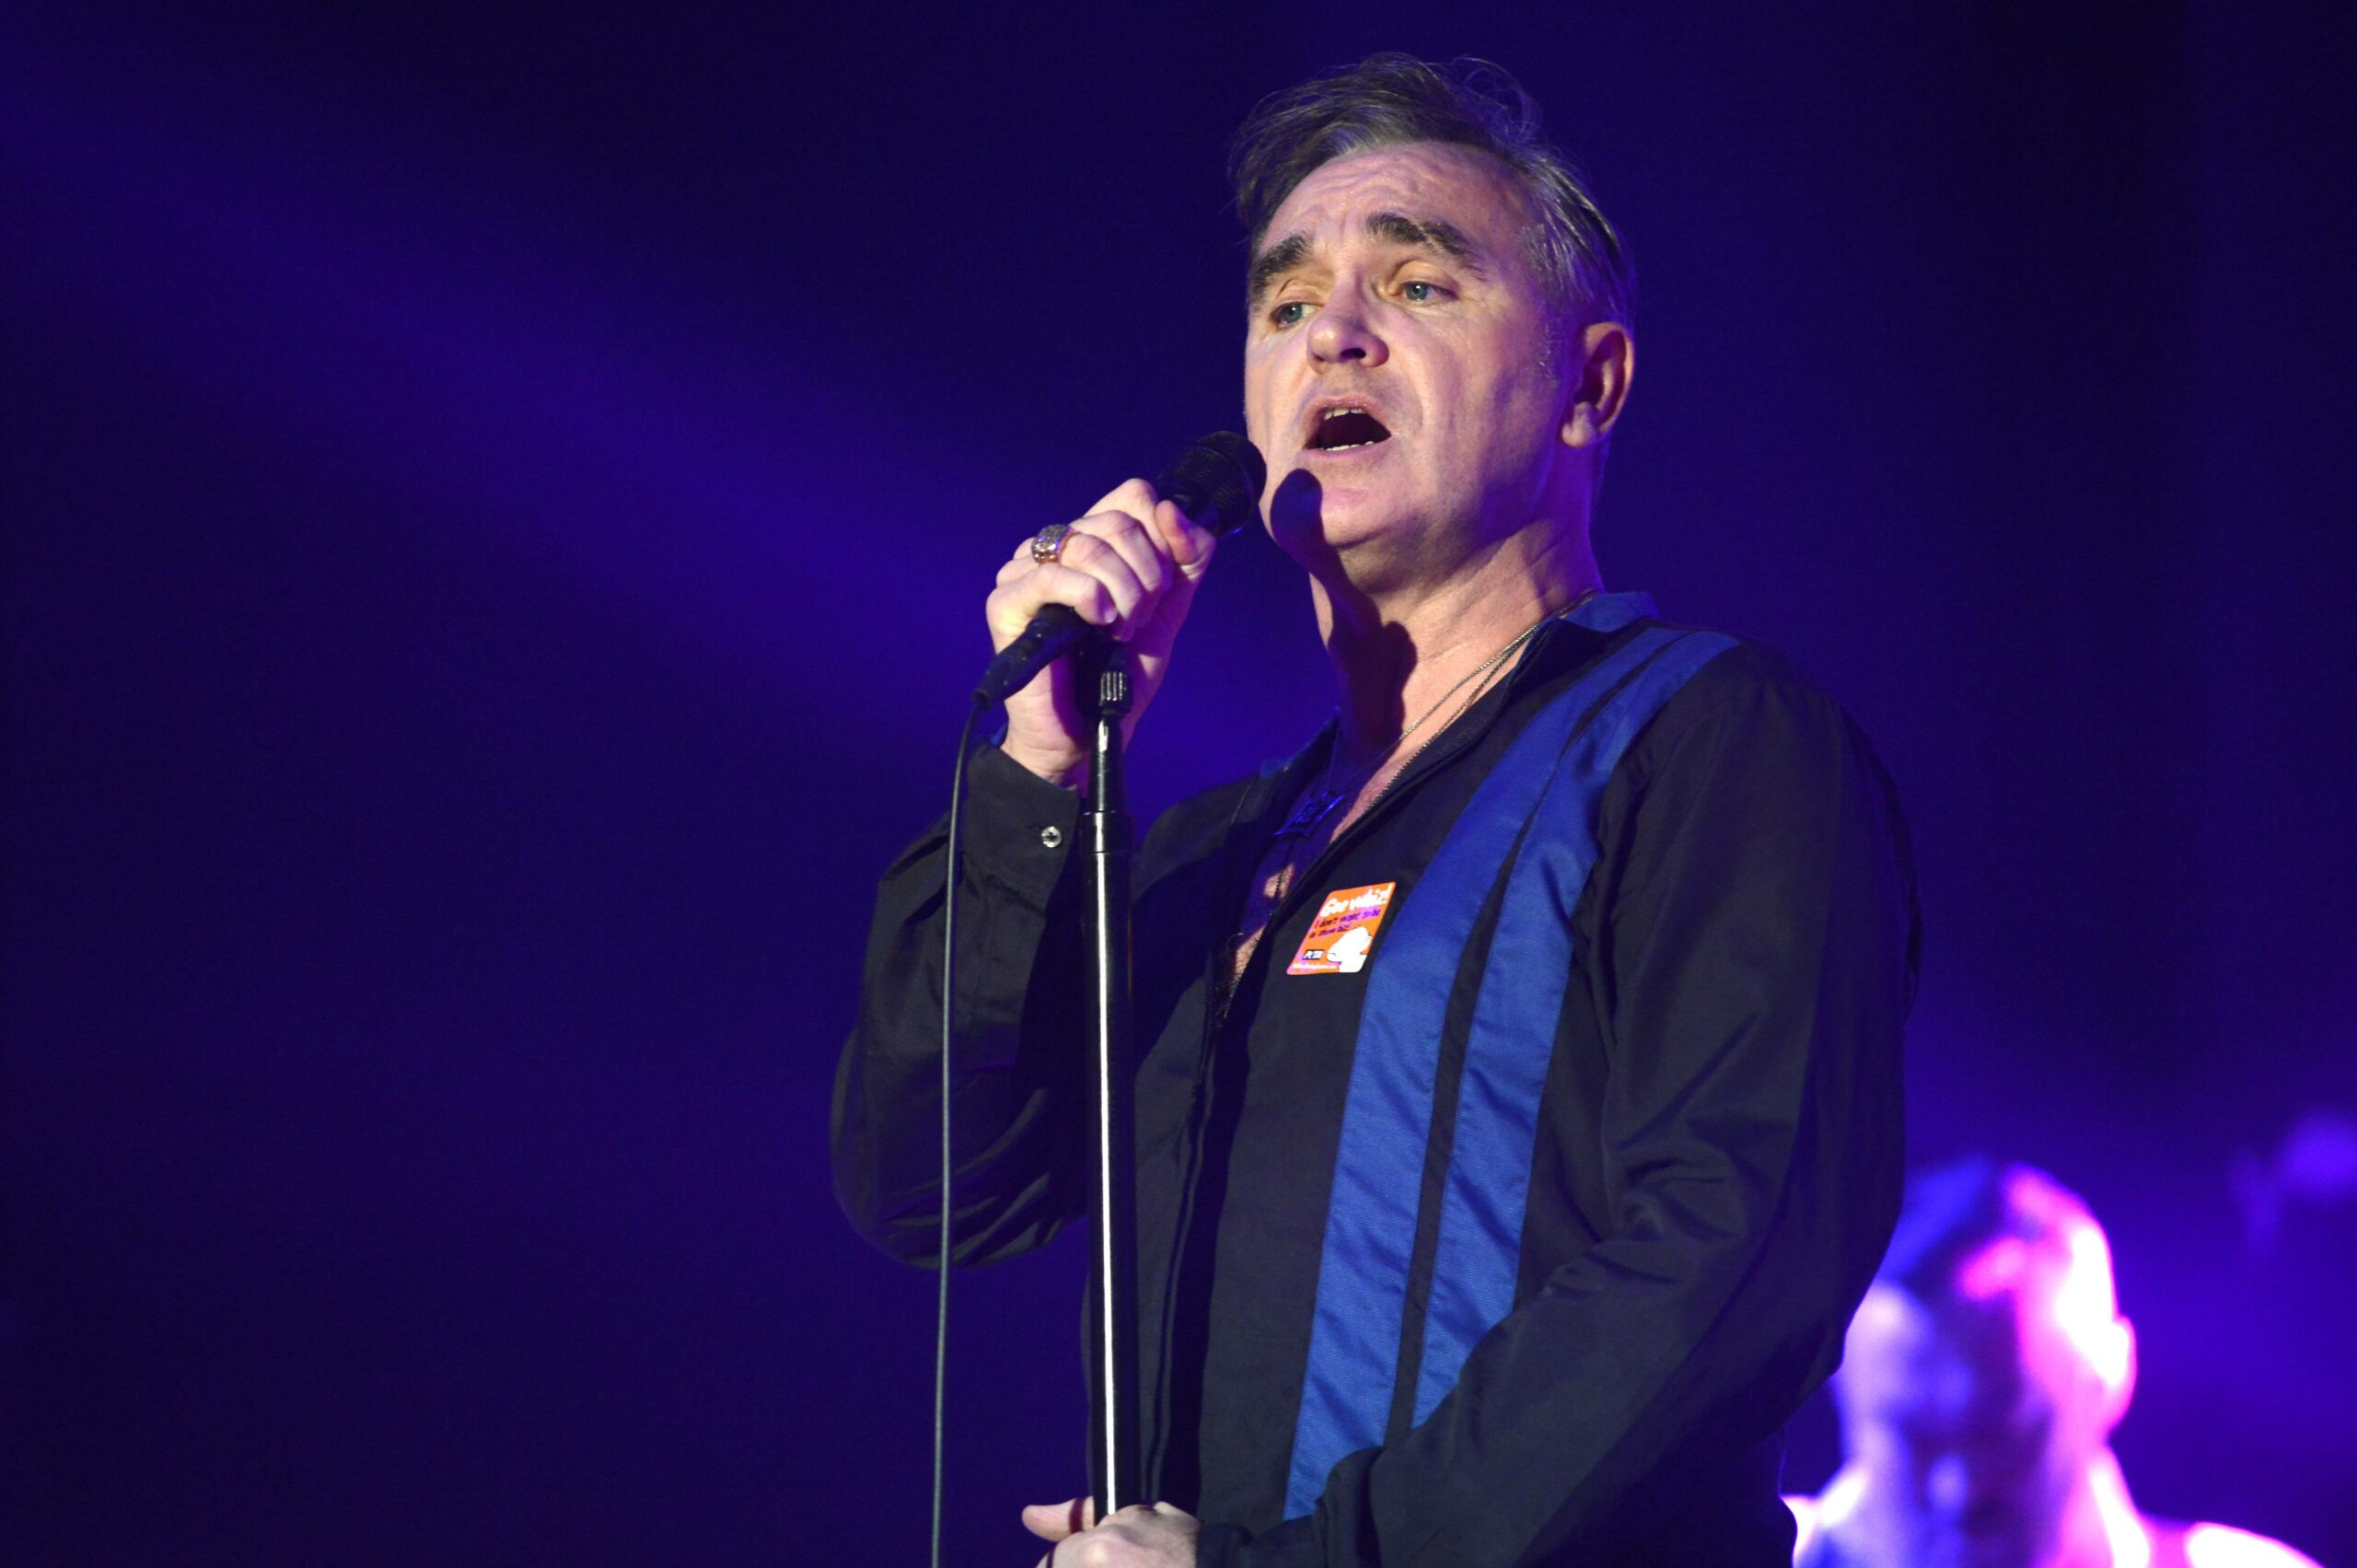 Sänger Morrissey bei einem Auftritt in Hannover